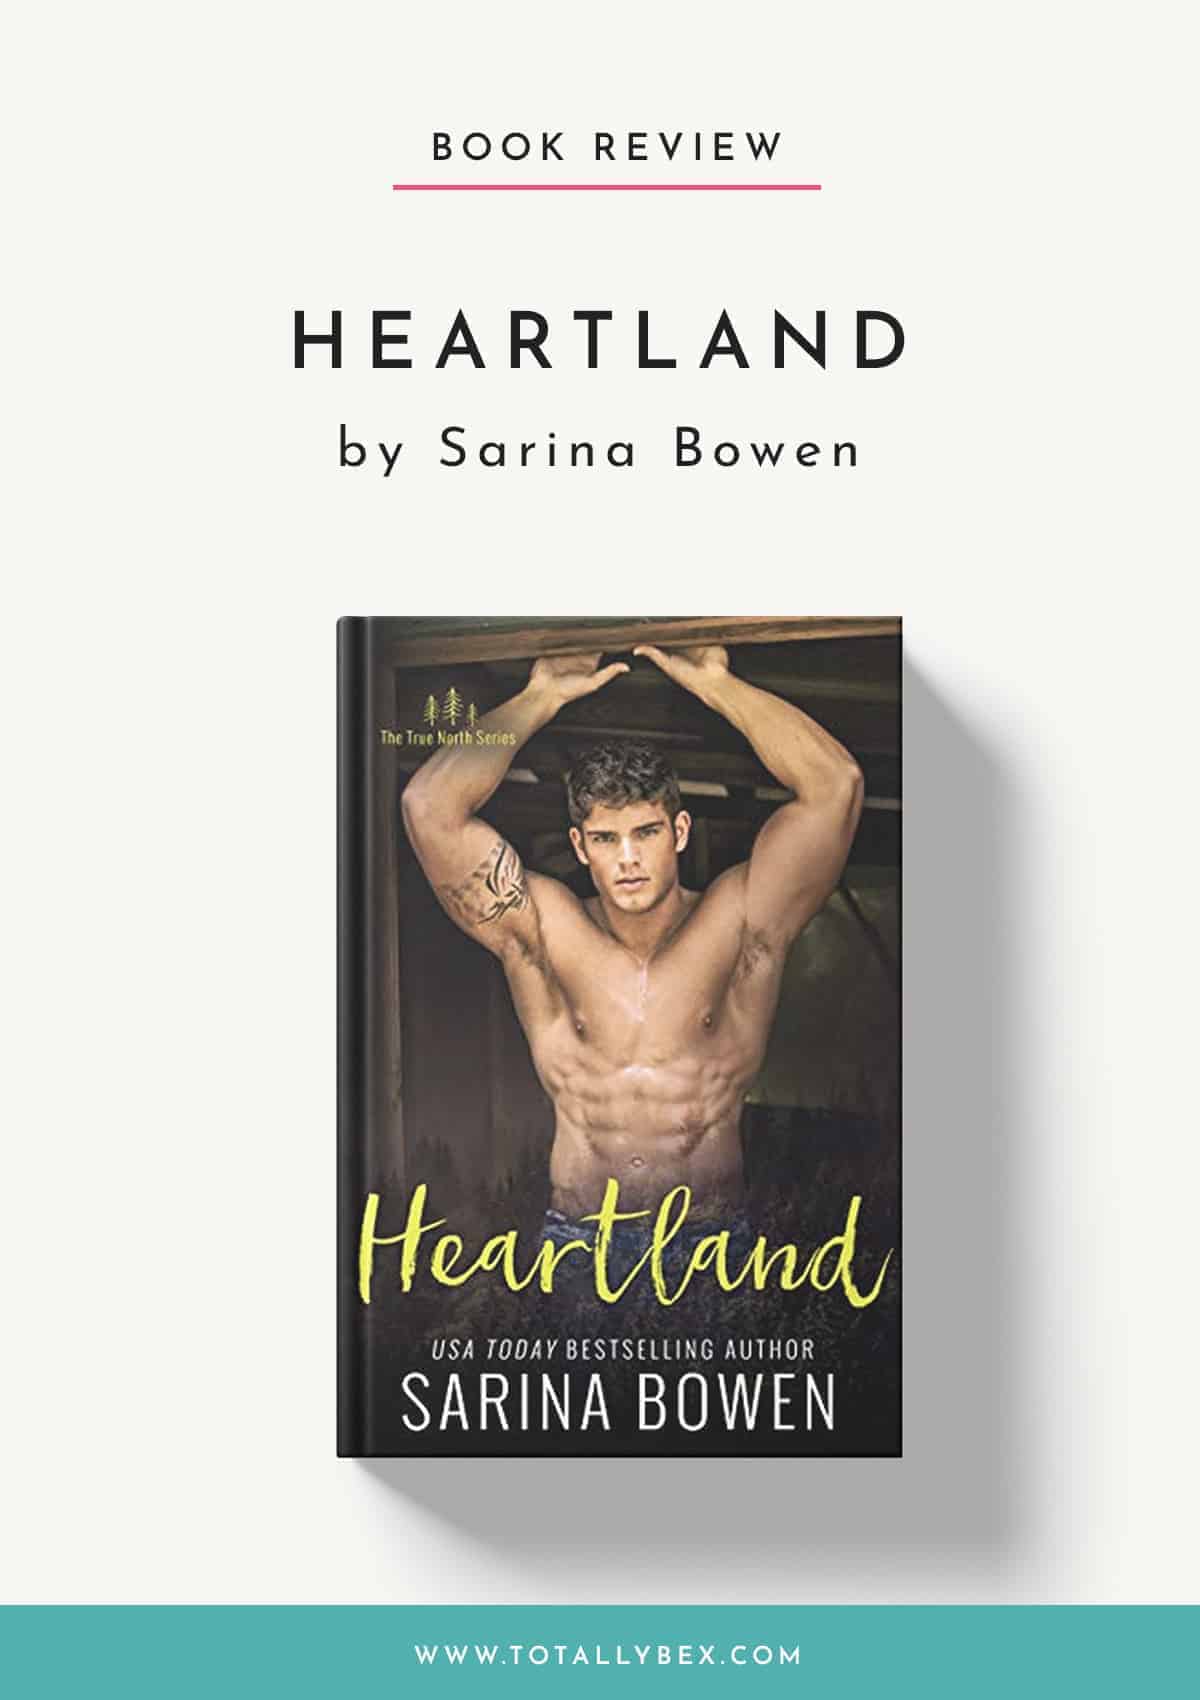 Heartland by Sarina Bowen-Book Review